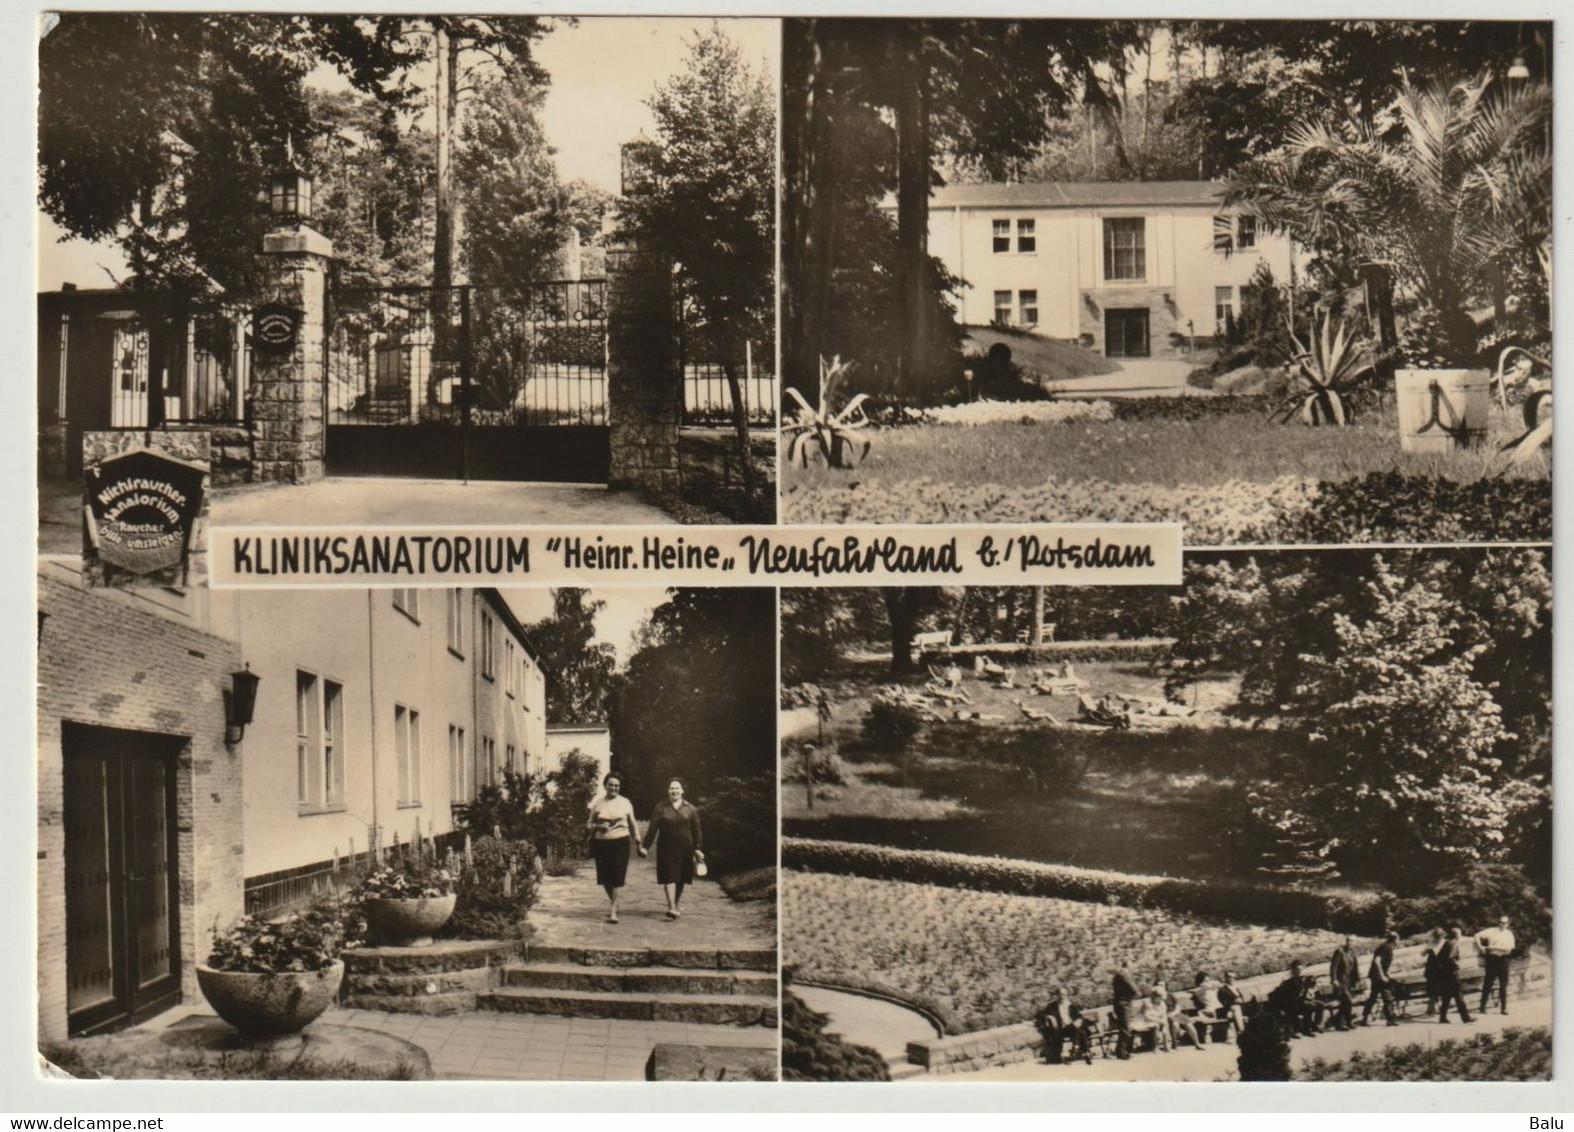 MBK SW Kliniksanatorium Heinrich Heine Neufahrland B./ Potsdam 1971, Postalisch Gelaufen, 2 Scans, Eingang Waldhaus ... - Neu Fahrland